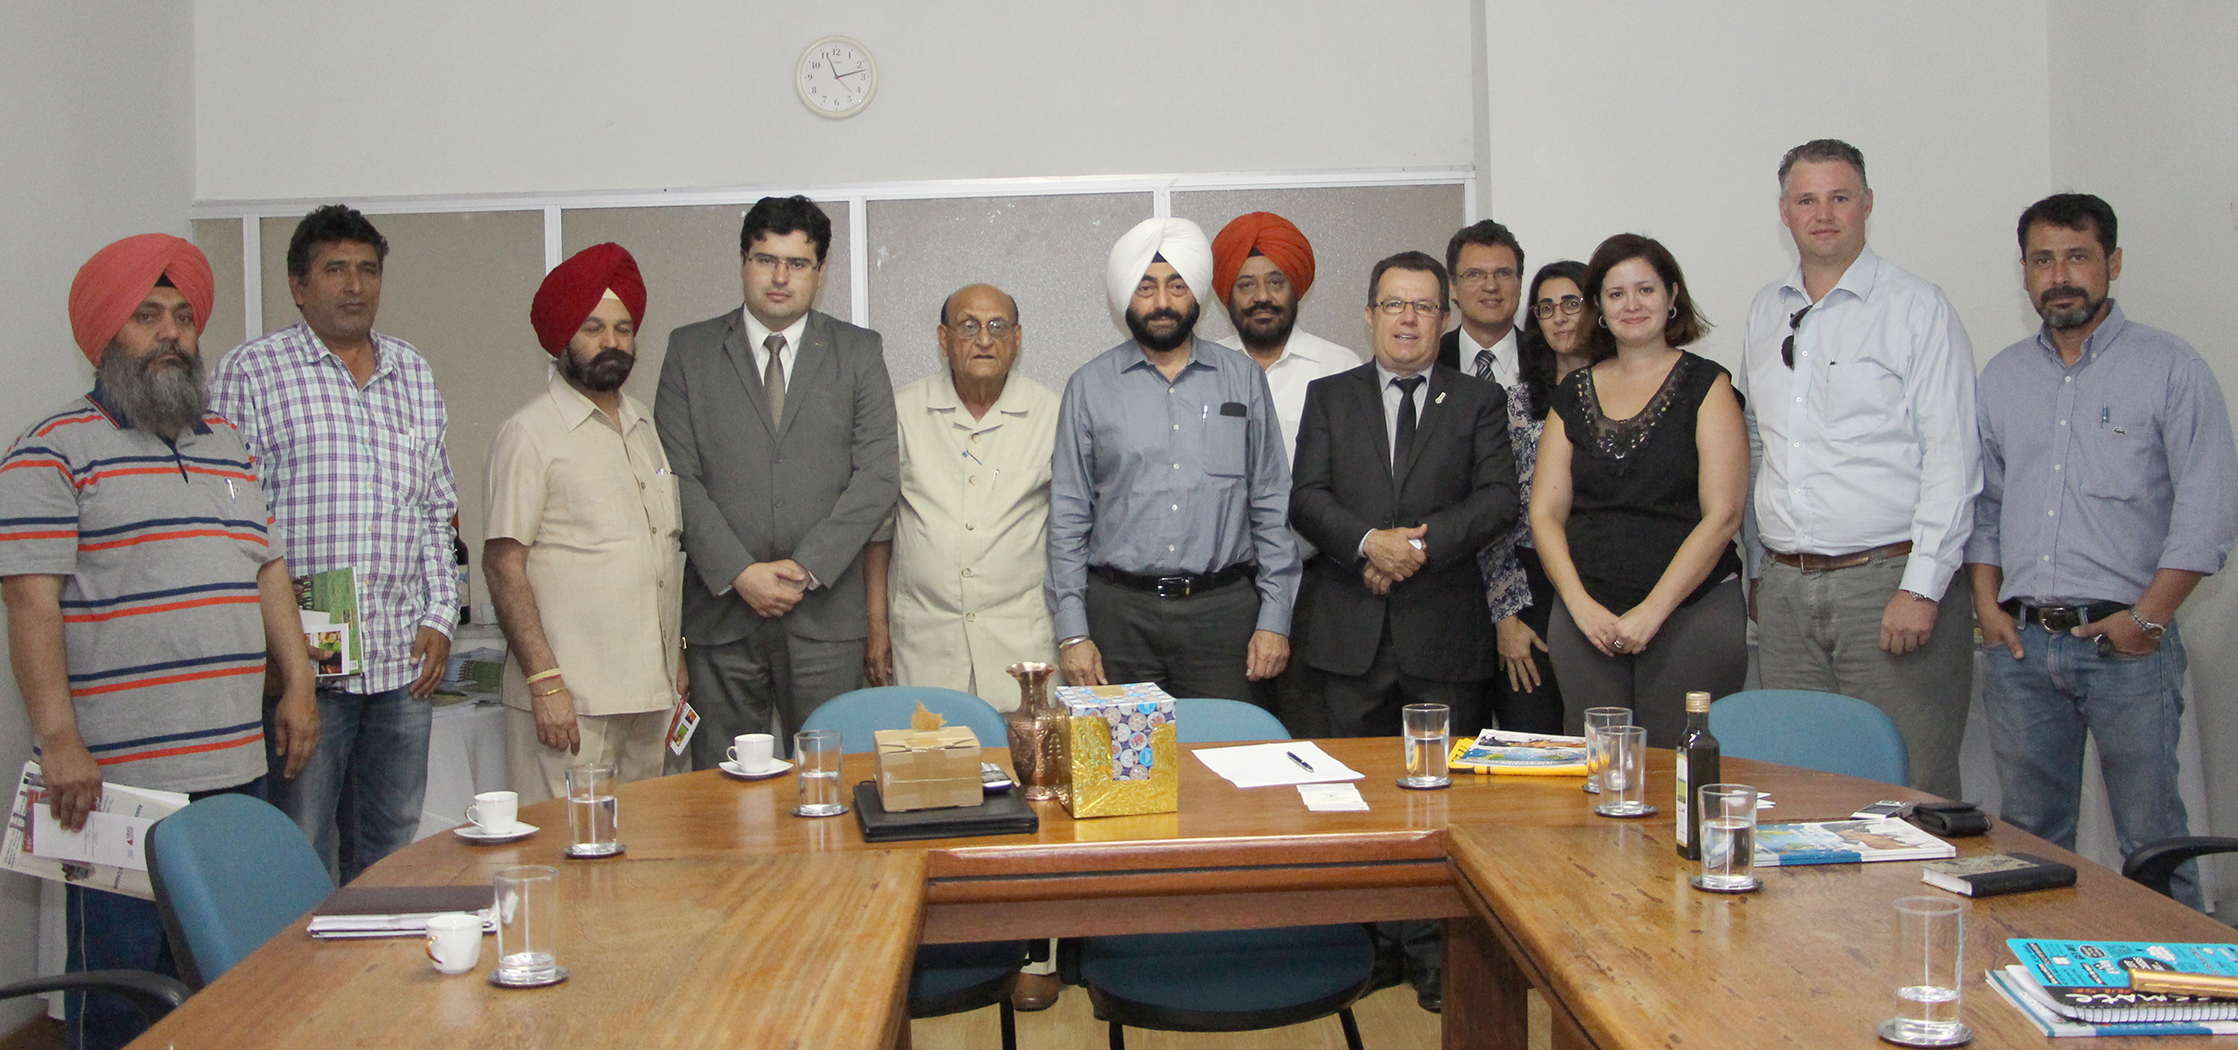 IMG_8022 - Indianos buscam parcerias de cooperação técnica para o desenvolvimento da pecuária leiteira